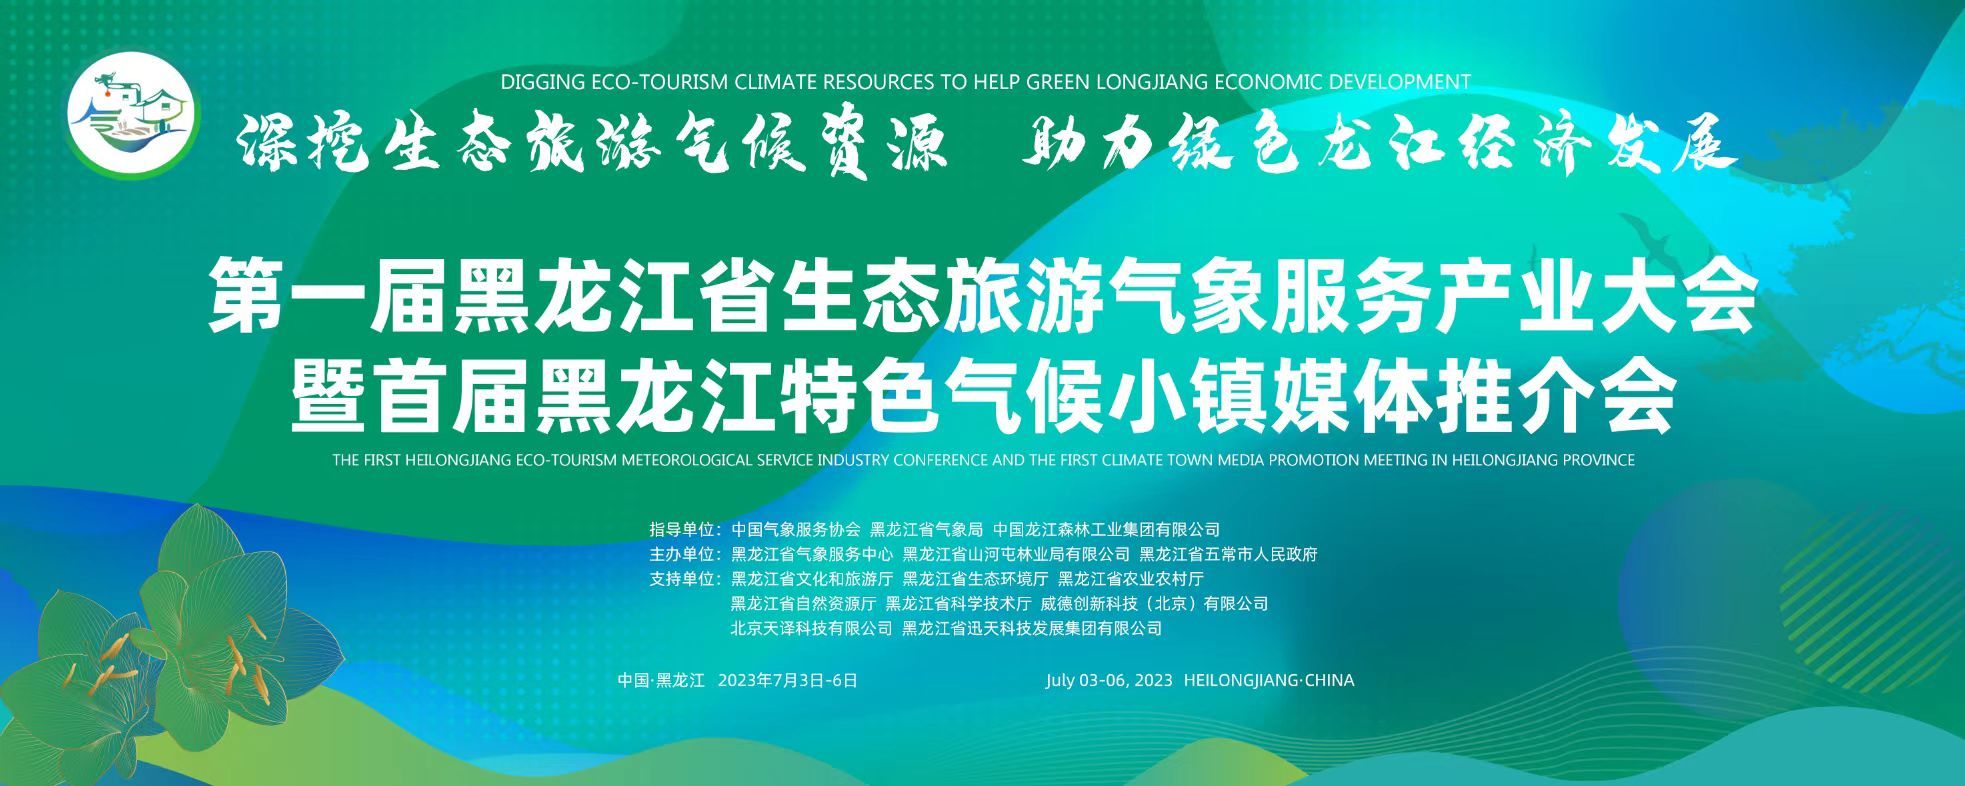 首届黑龙江省生态旅游气象服务产业大会暨特色气候小镇媒体推介会在哈召开